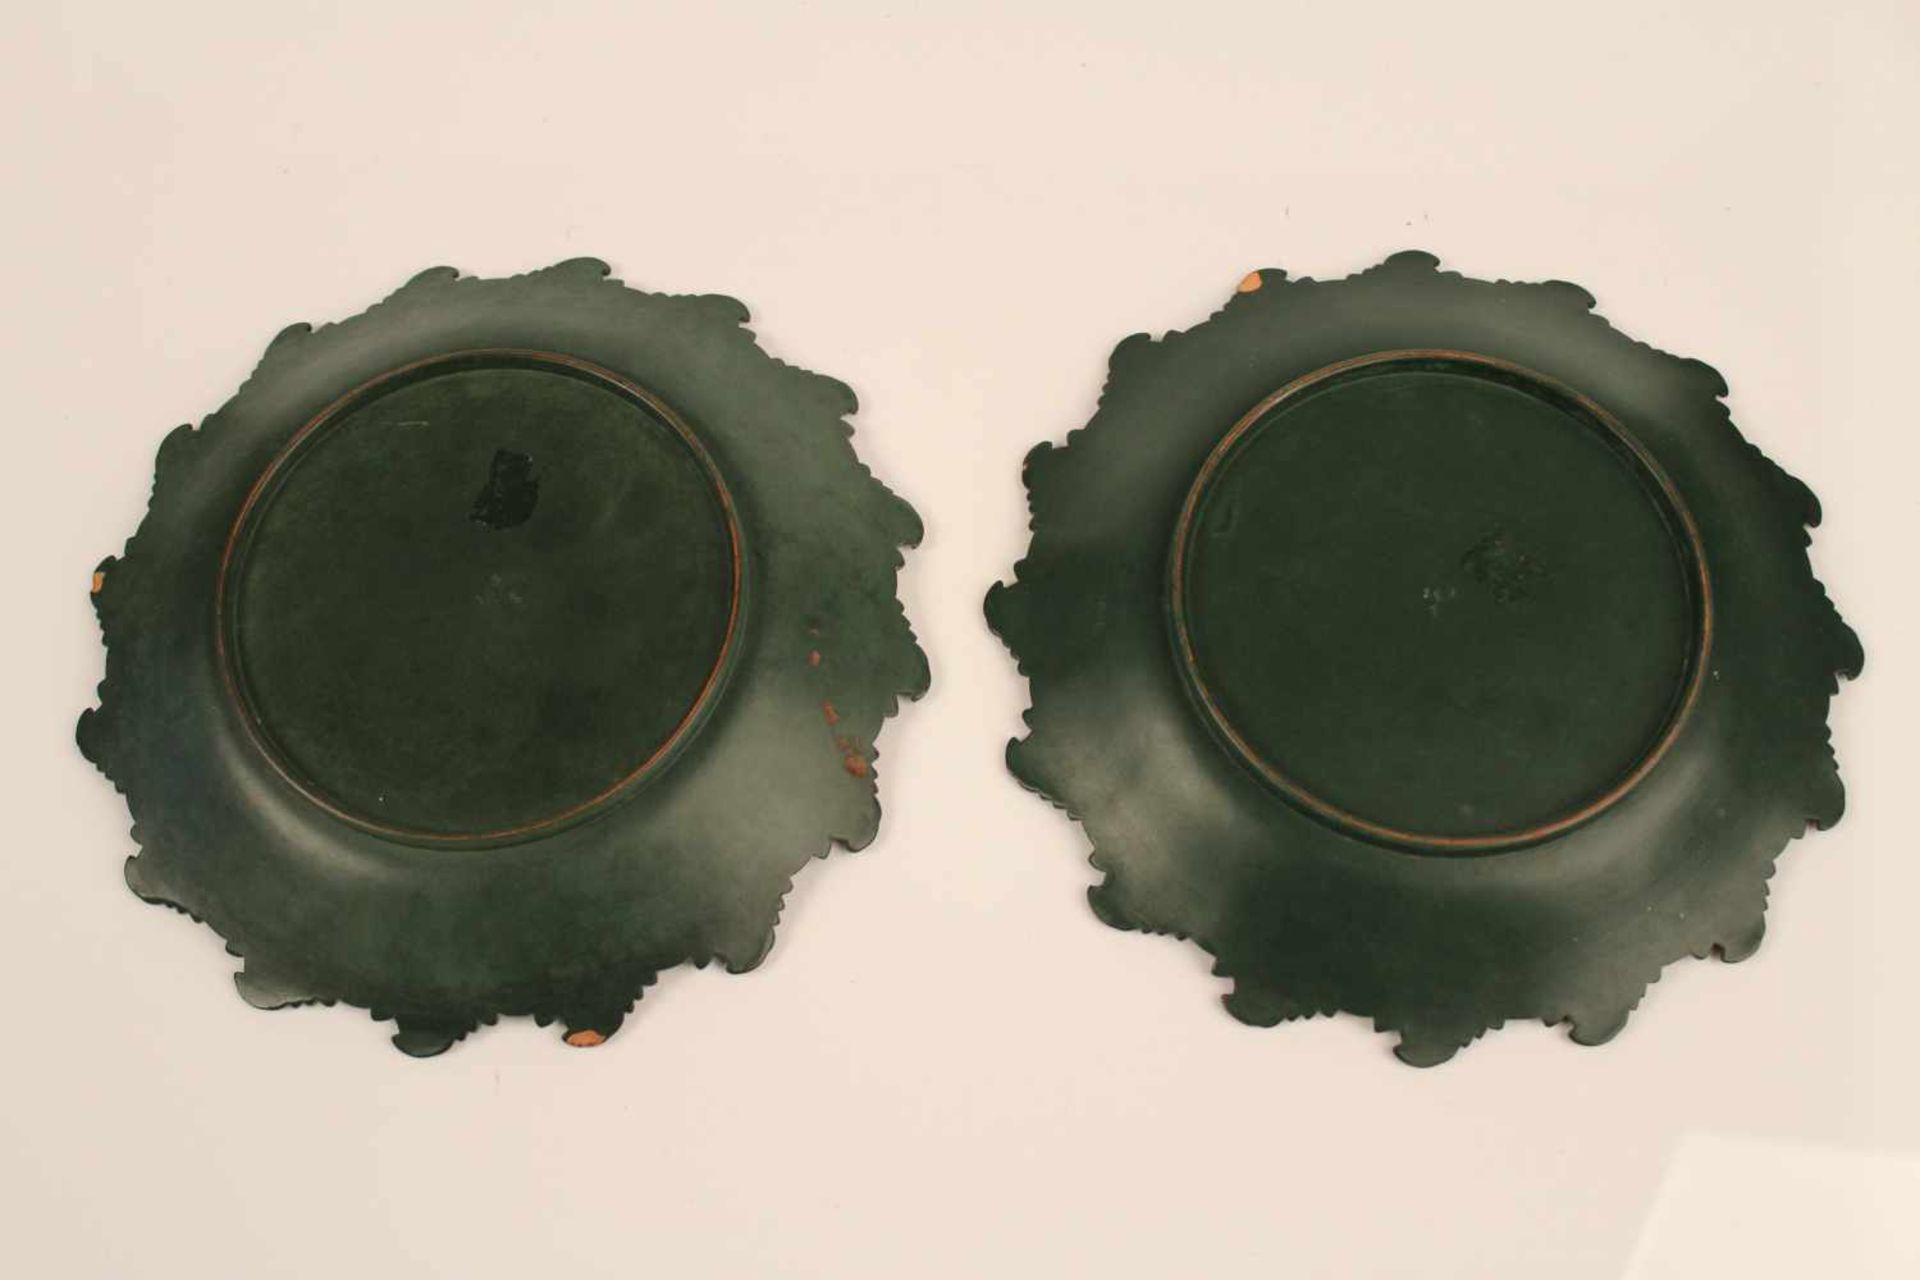 Paar Teller.Um 1900. Steingut, grün glasiert. Manufakturmarke S&G. D: 23 cm. Best. - Bild 4 aus 5